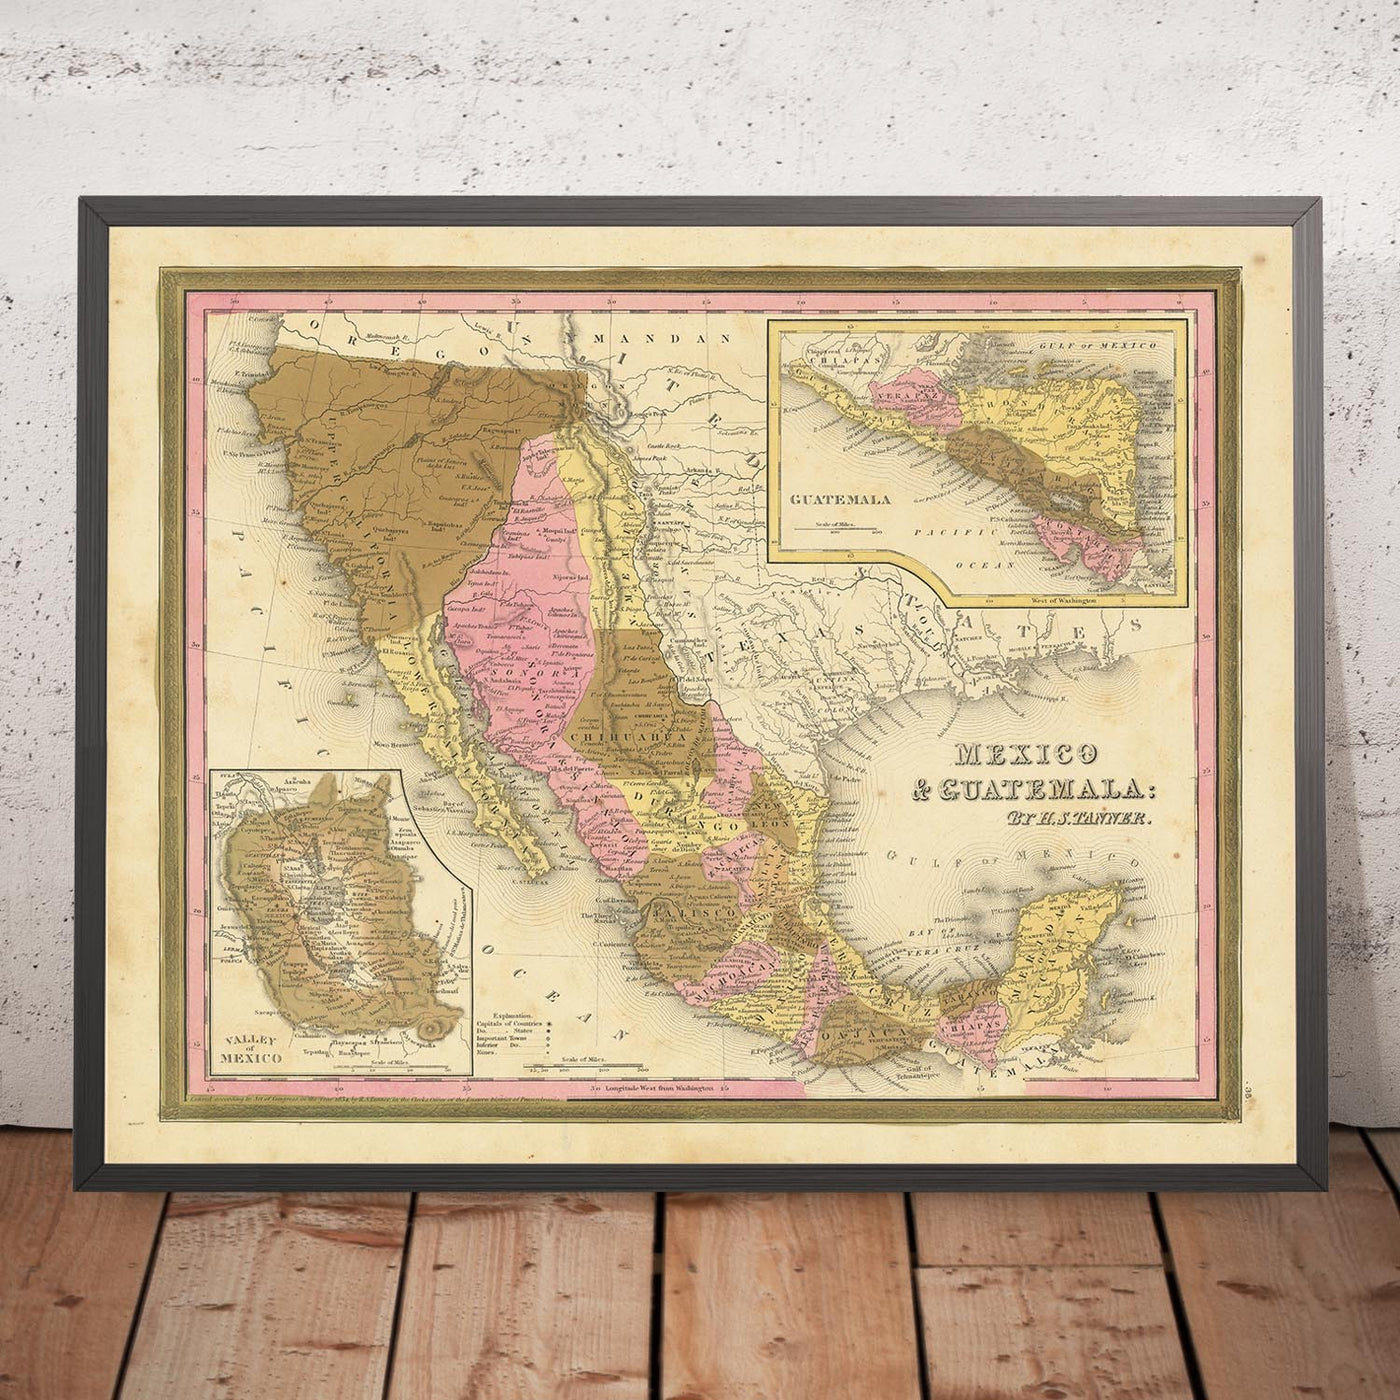 Alte Karte von Mexiko, Guatemala, Texas, Kalifornien von H. S. Tanner, 1839: Mexiko-Stadt, Puebla, Los Angeles, San Francisco, Austin, Houston